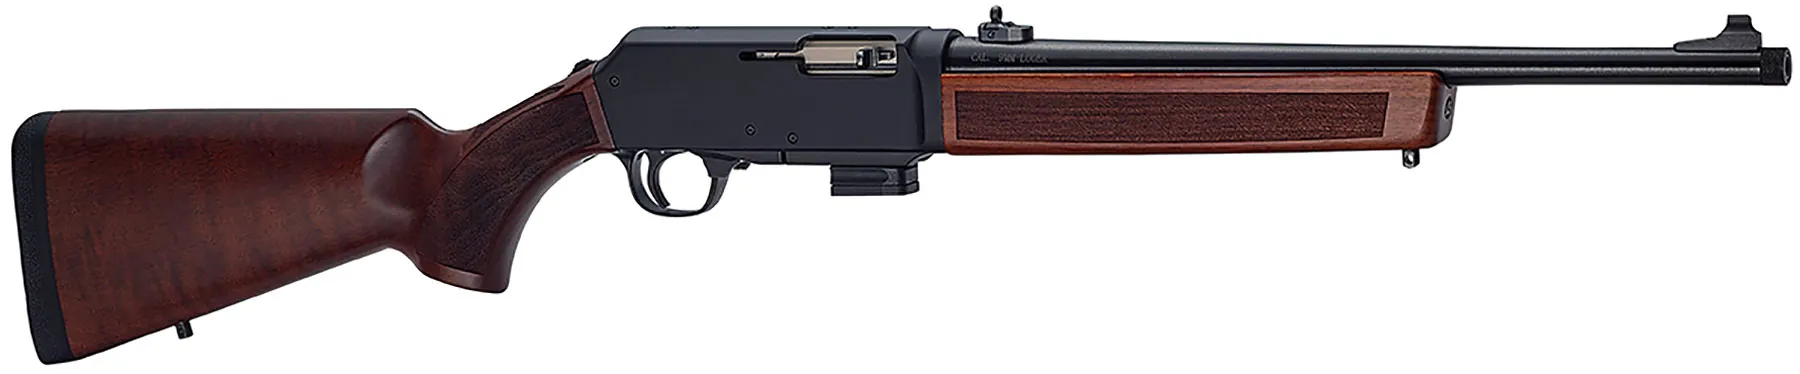 Homesteader 9mm Carbine